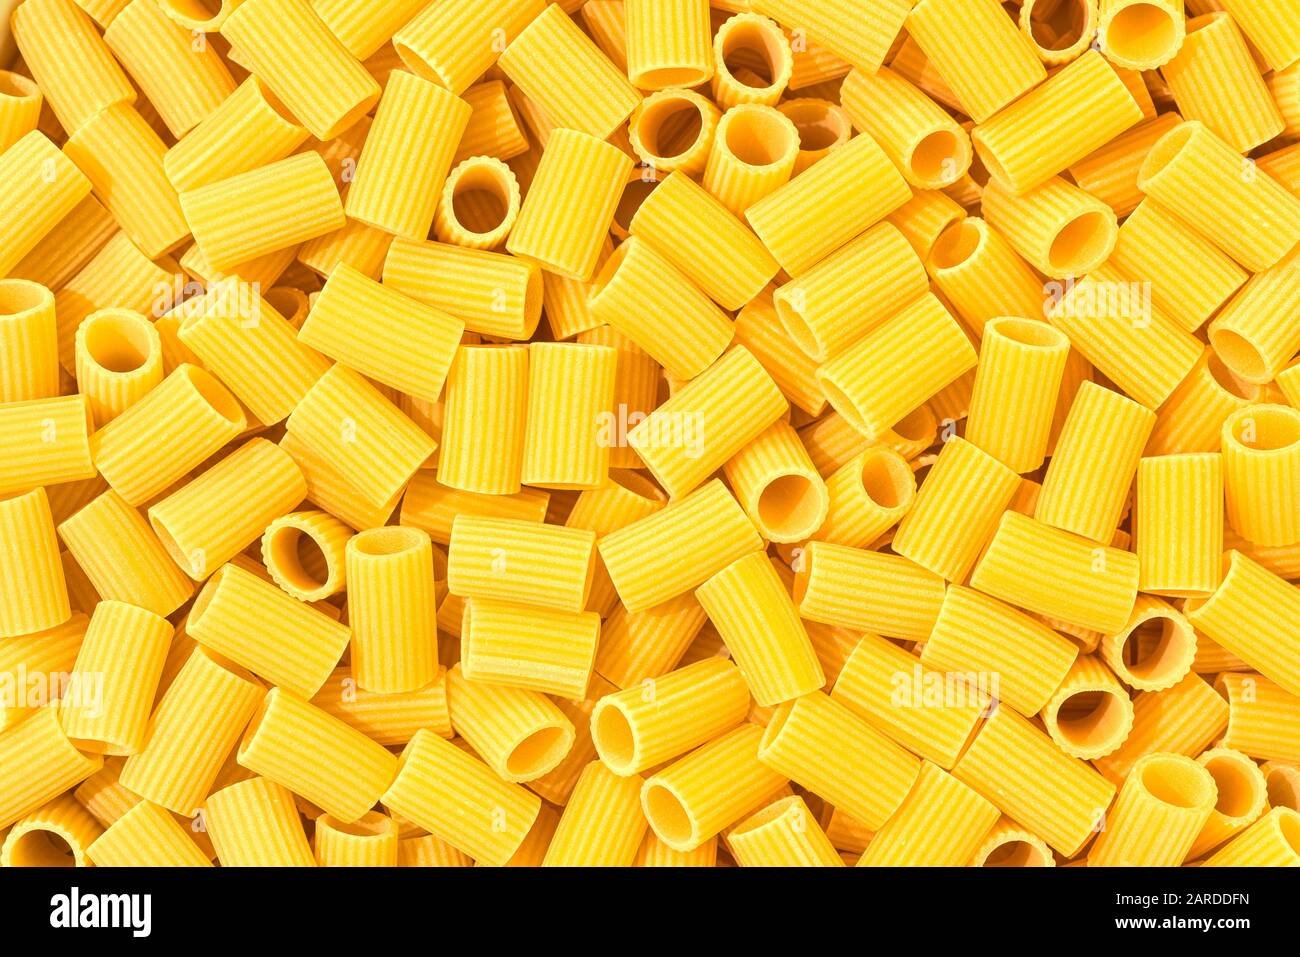 Italien Macaroni Pasta demi-manches rayé de la nourriture brute fond ou texture gros plan Banque D'Images